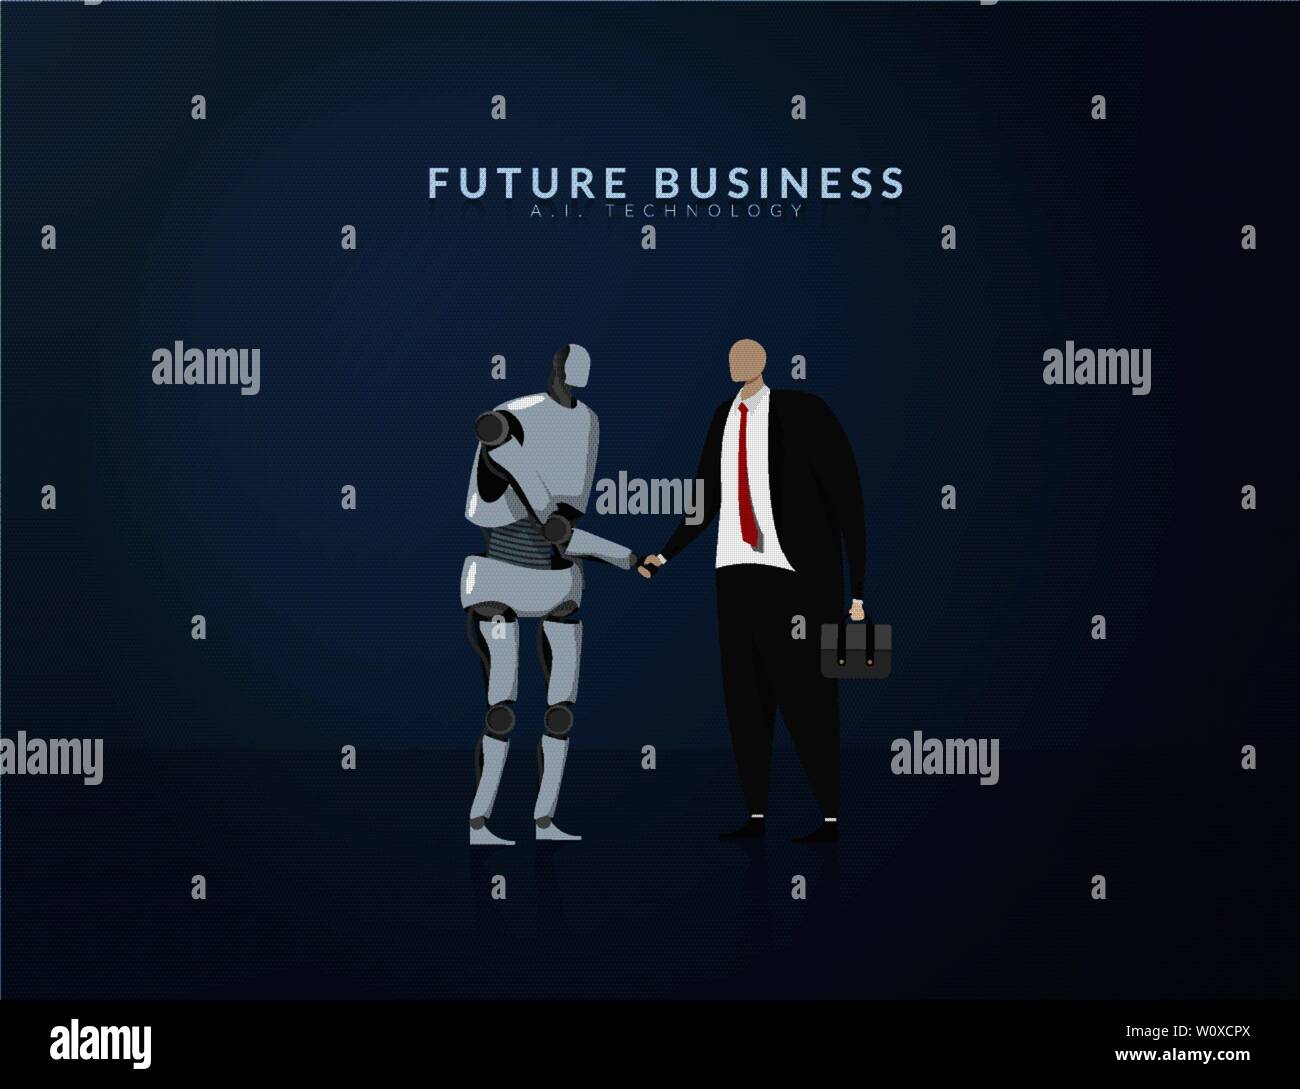 Menschenrechte und AI zusammen arbeiten, Future Business, Technologie und Innovation Konzept. AI oder künstliche Intelligenz zitternden Hand für die Zusammenarbeit im Bus Stock Vektor